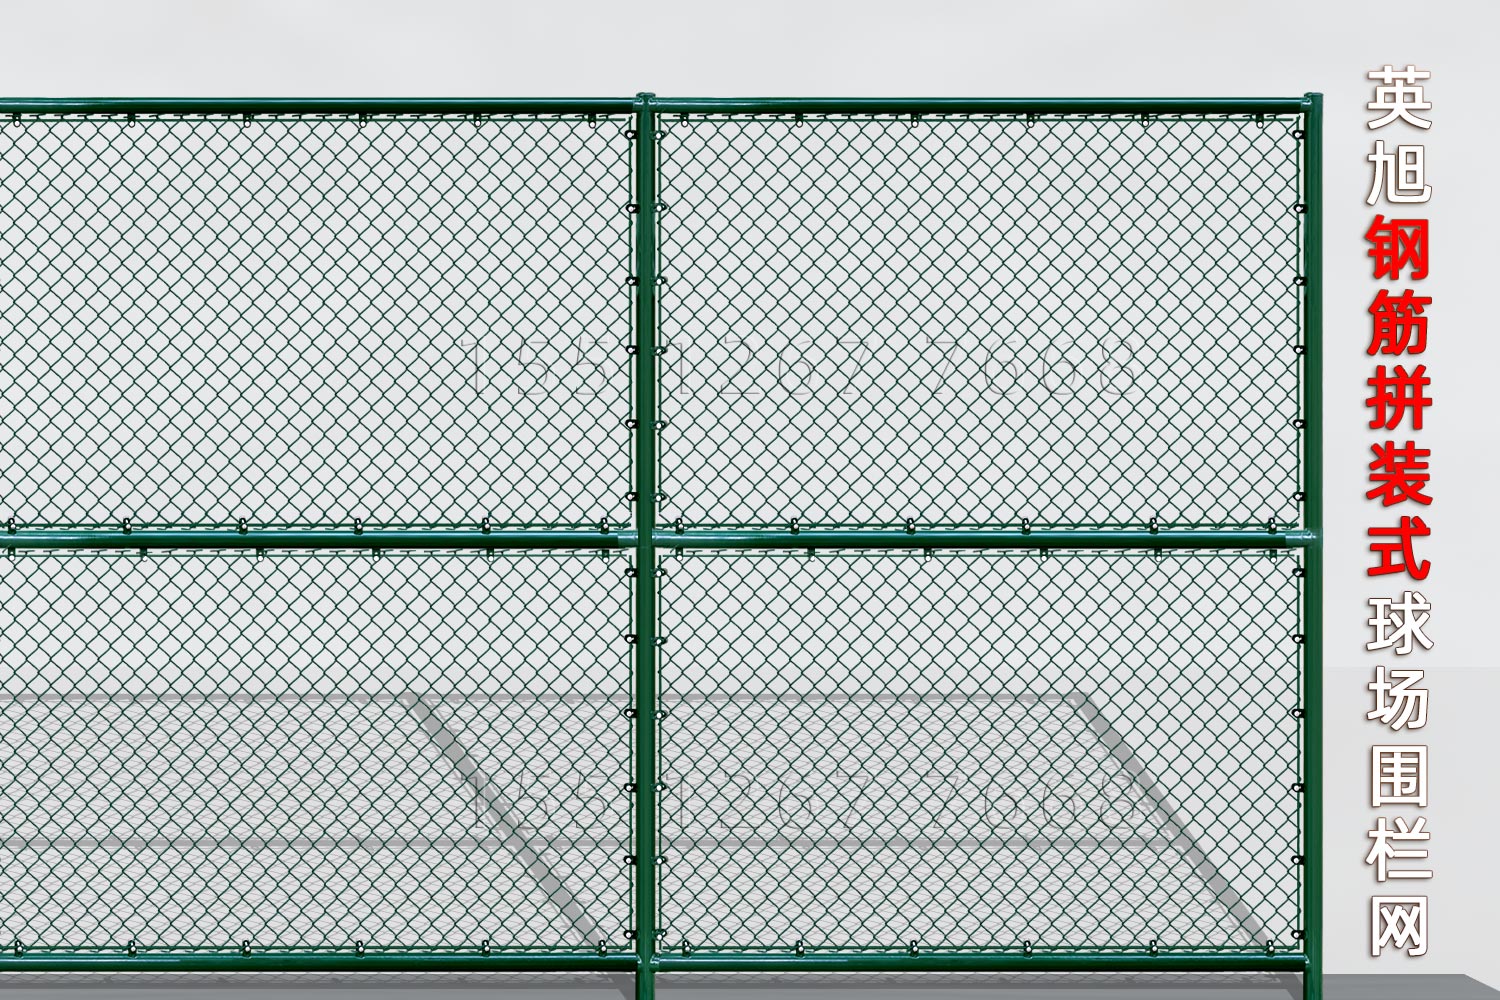 天津钢筋组装式球场围栏网